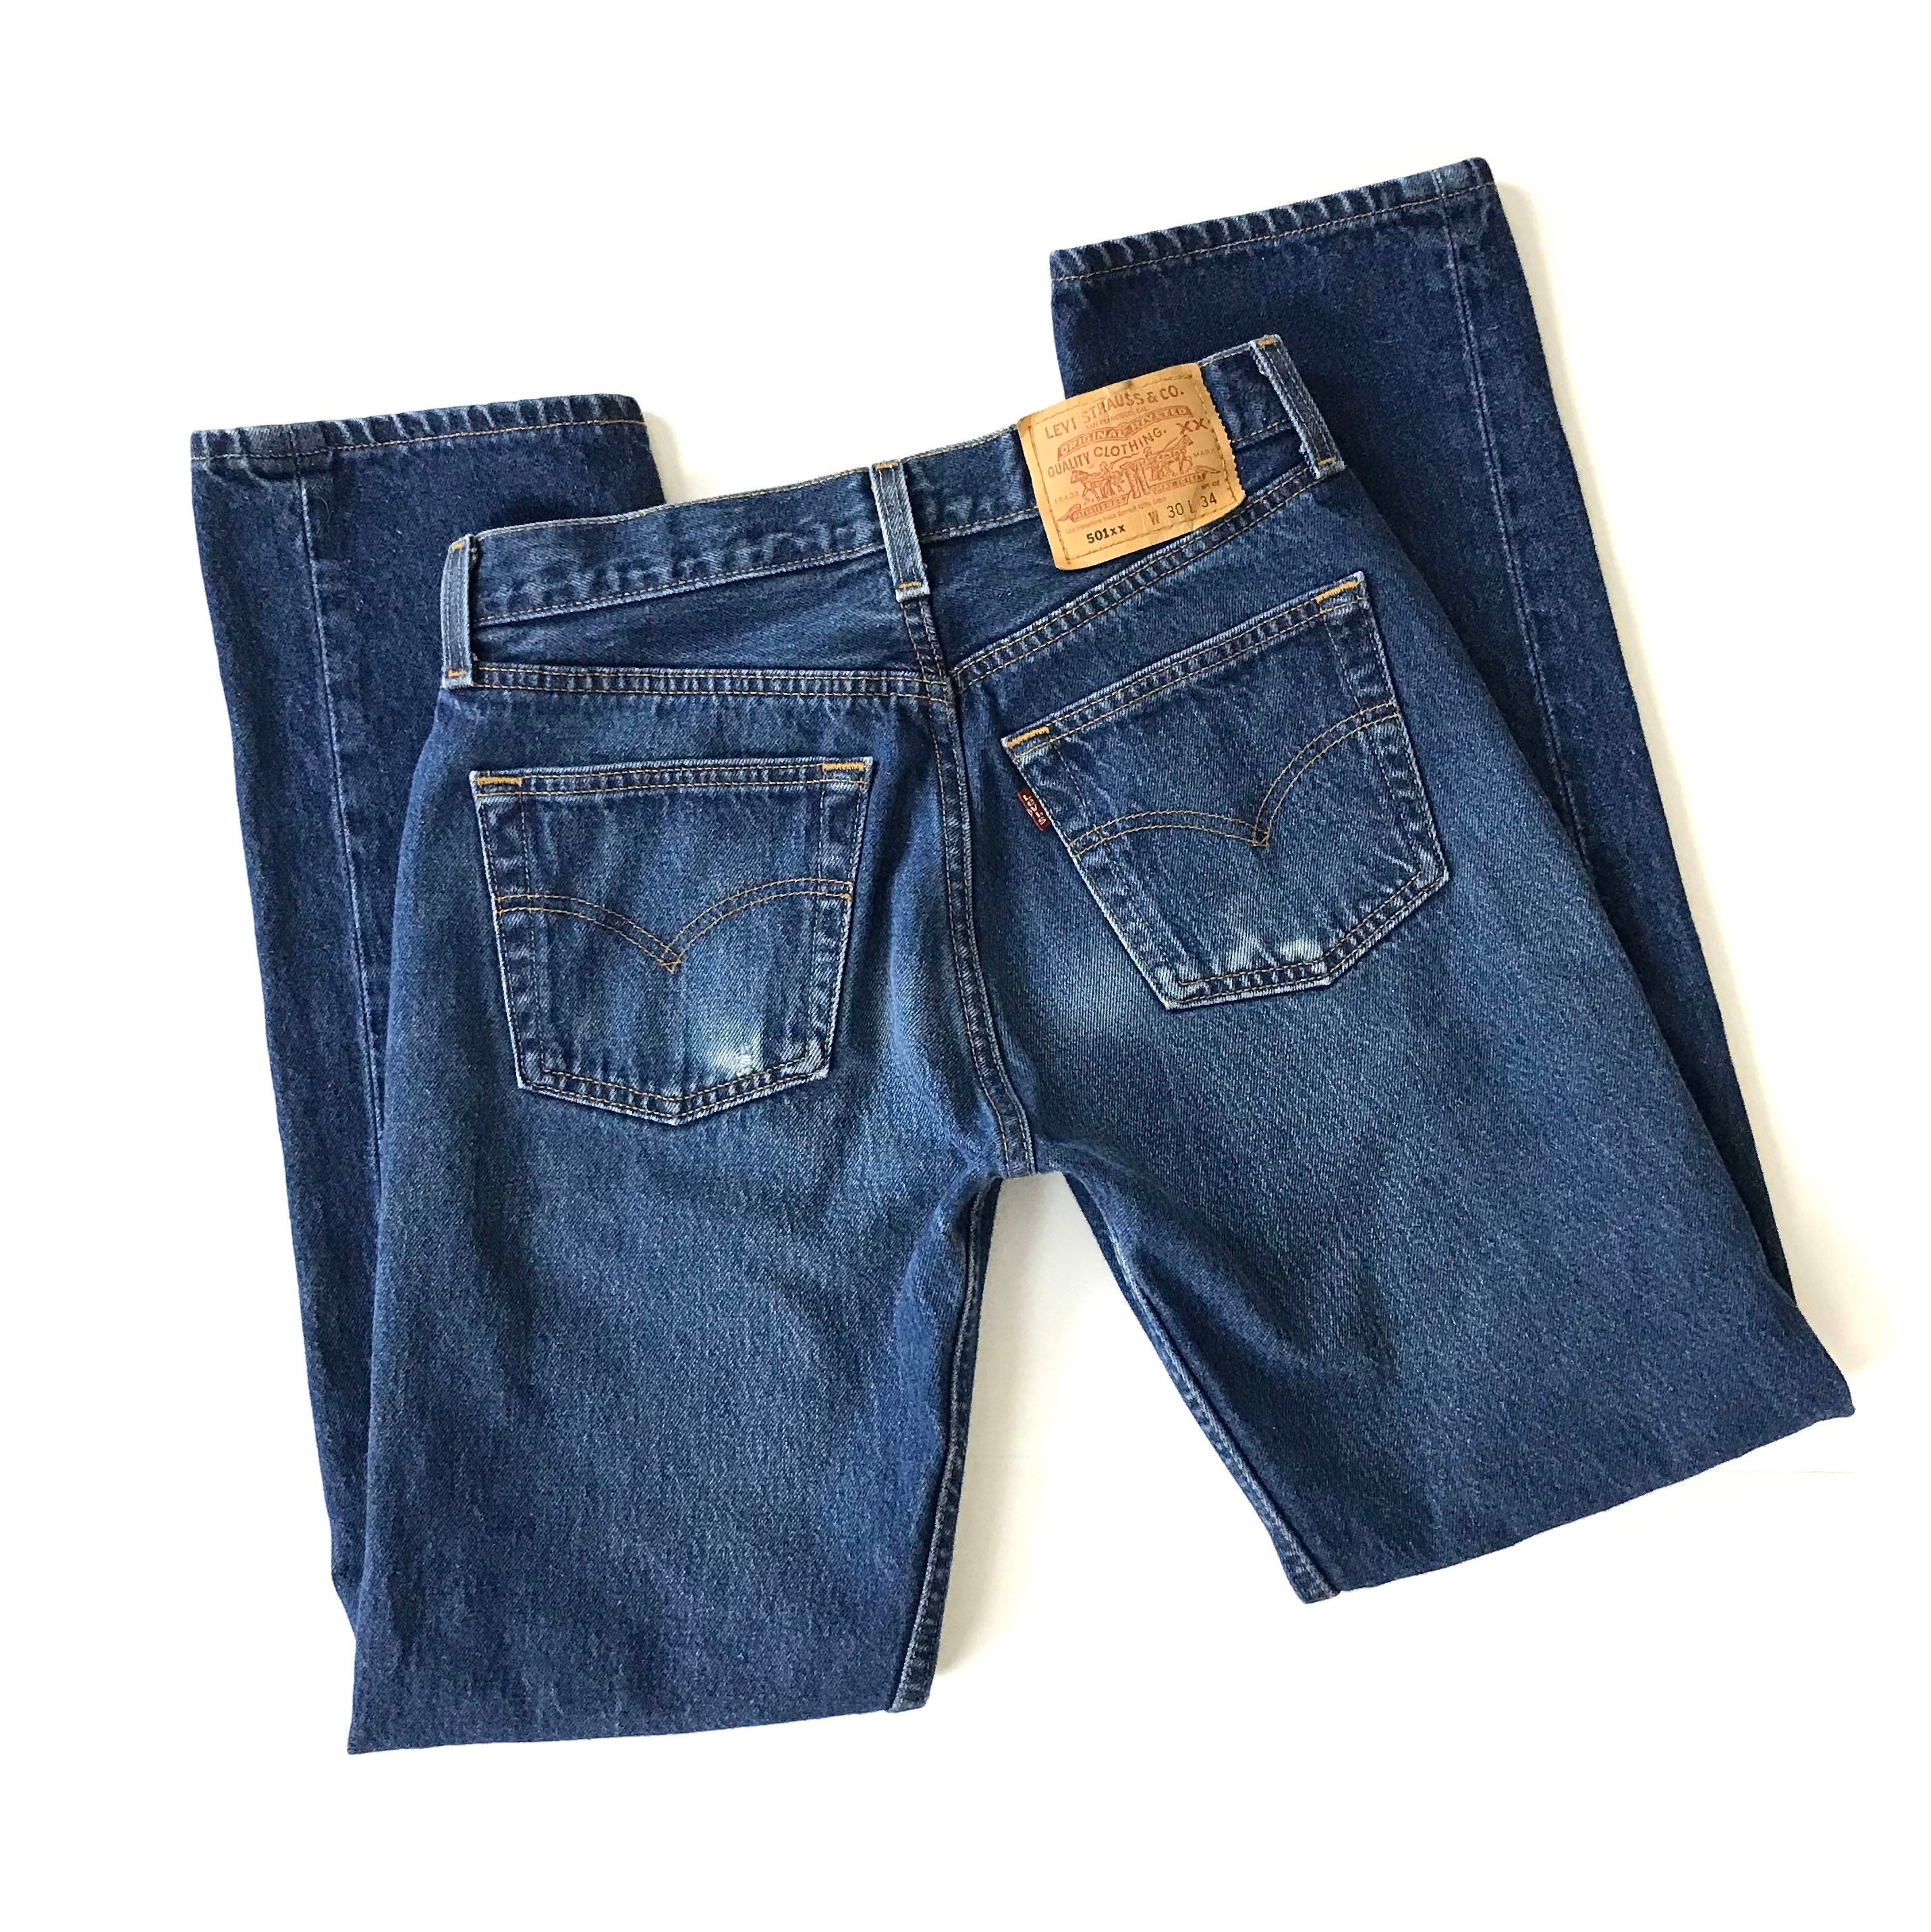 Levi's 501xx Vintage Jeans / Size 26